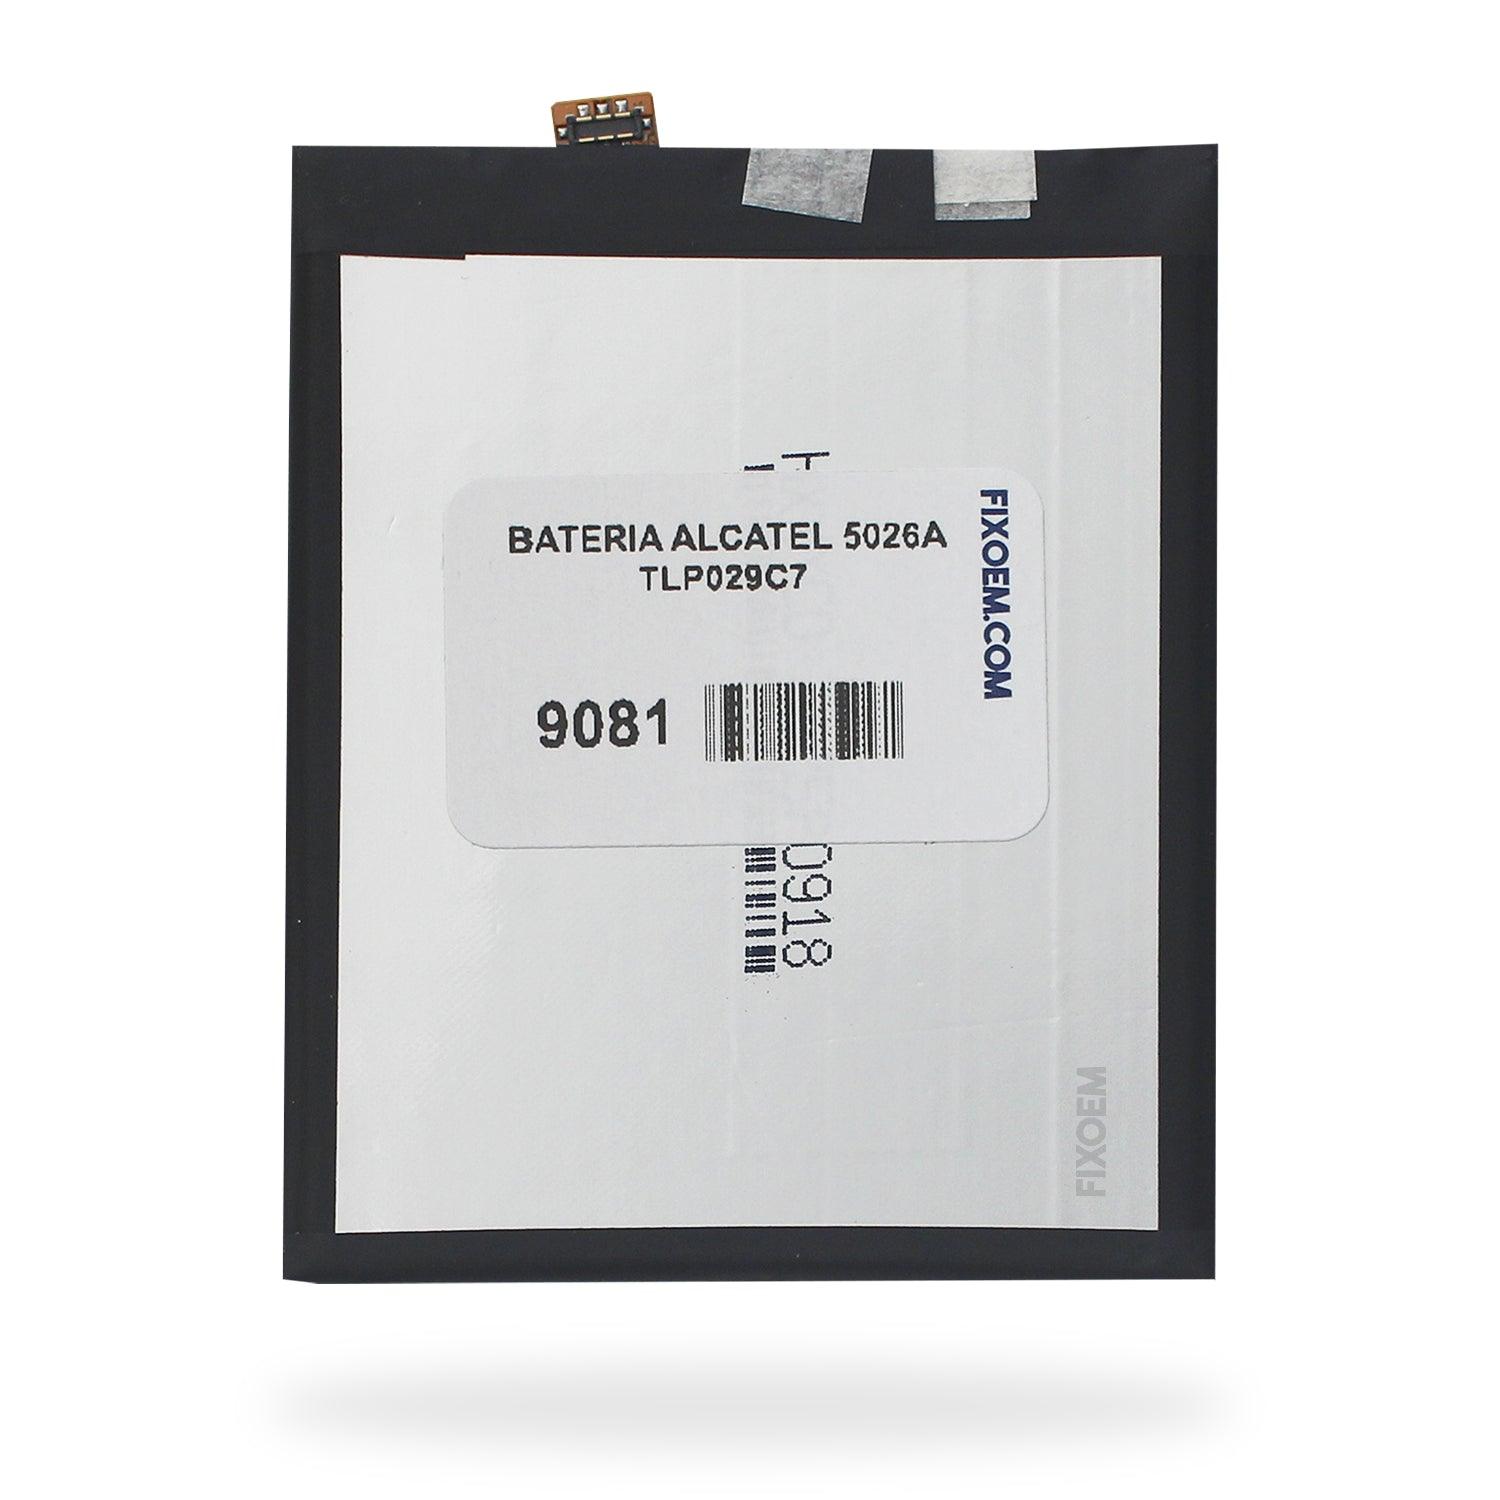 Bateria Alcatel 5026A Tlp029C7 a solo $ 140.00 Refaccion y puestos celulares, refurbish y microelectronica.- FixOEM